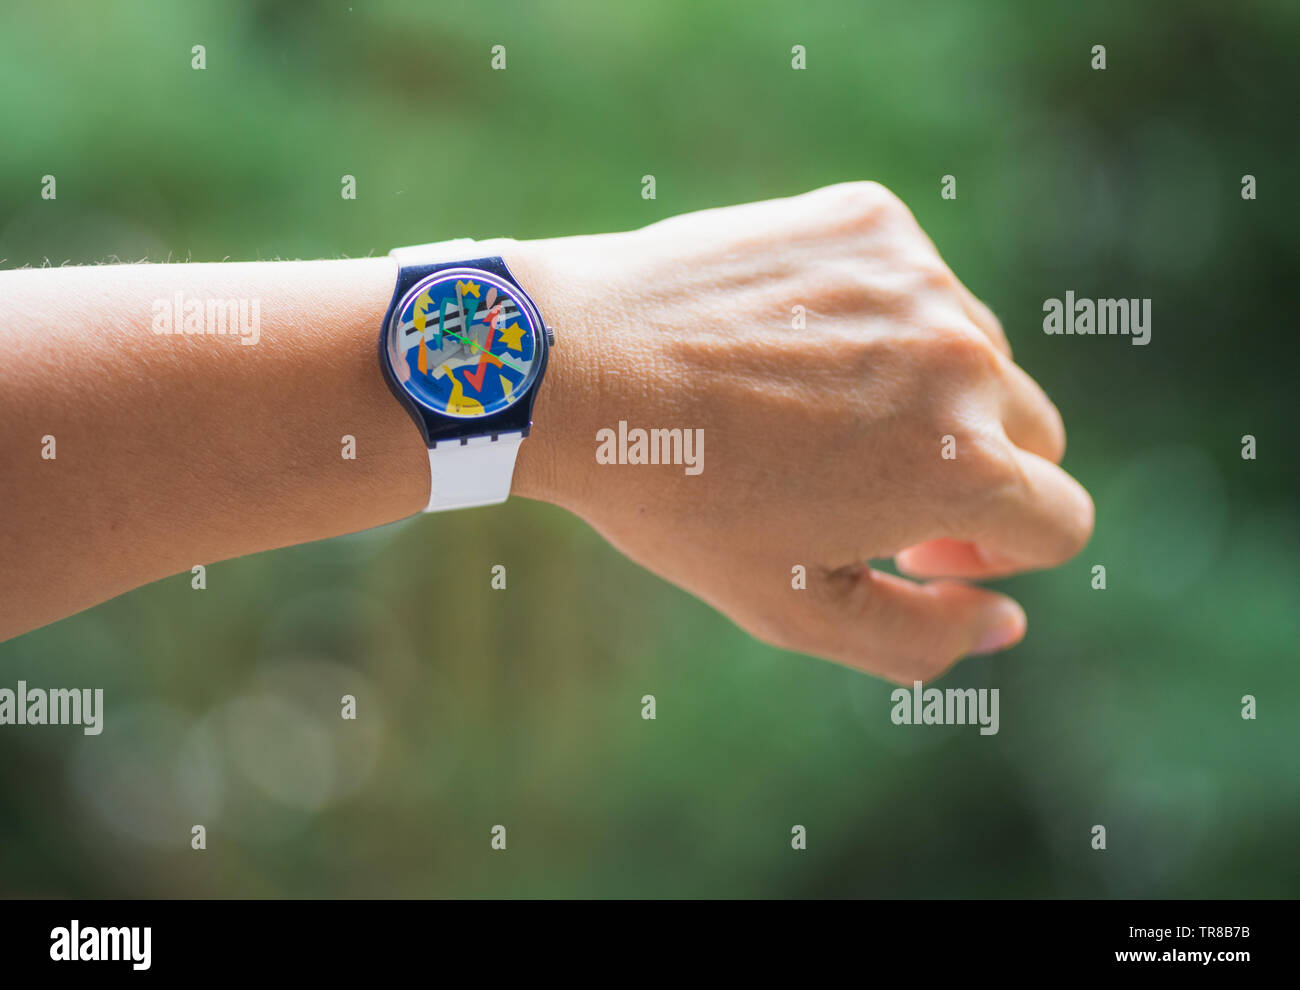 Frau tragen bunte 1990 den Swatch Armbanduhr mit weißem Band prüfen  Stockfotografie - Alamy